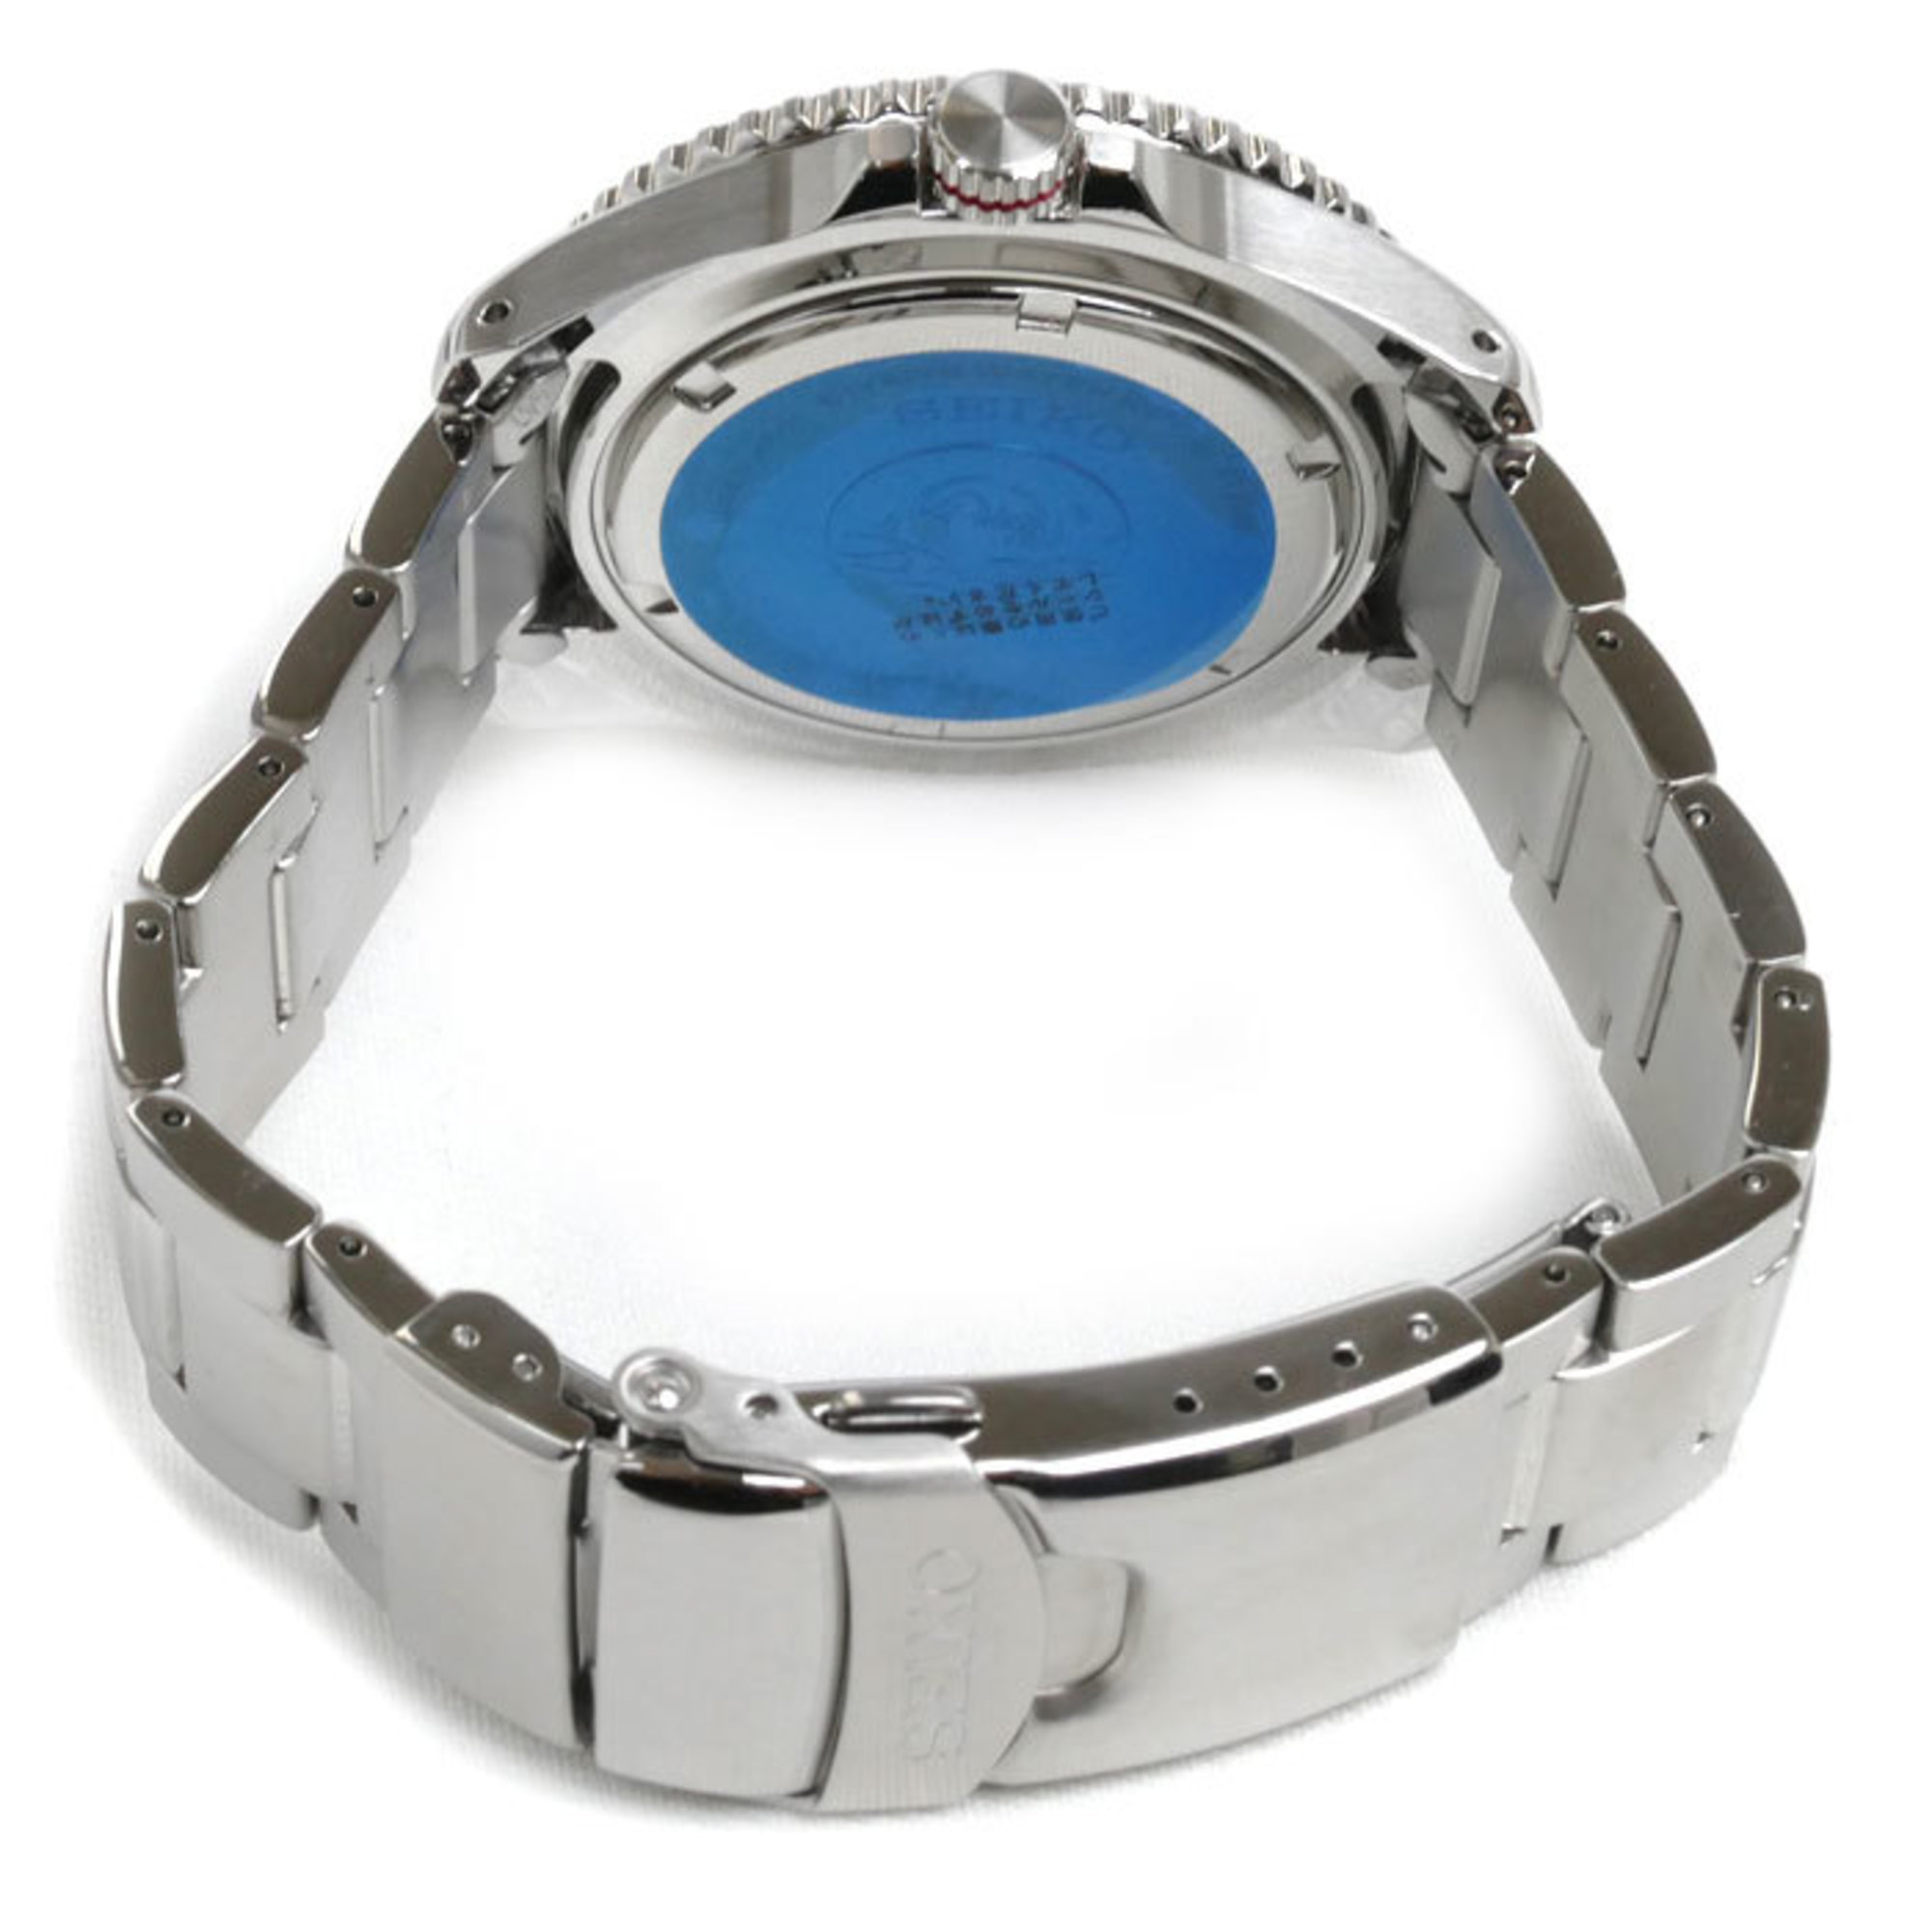 SEIKO Prospex Diver Scuba Watch Solar SBDJ051 V157-0DP0 Men's